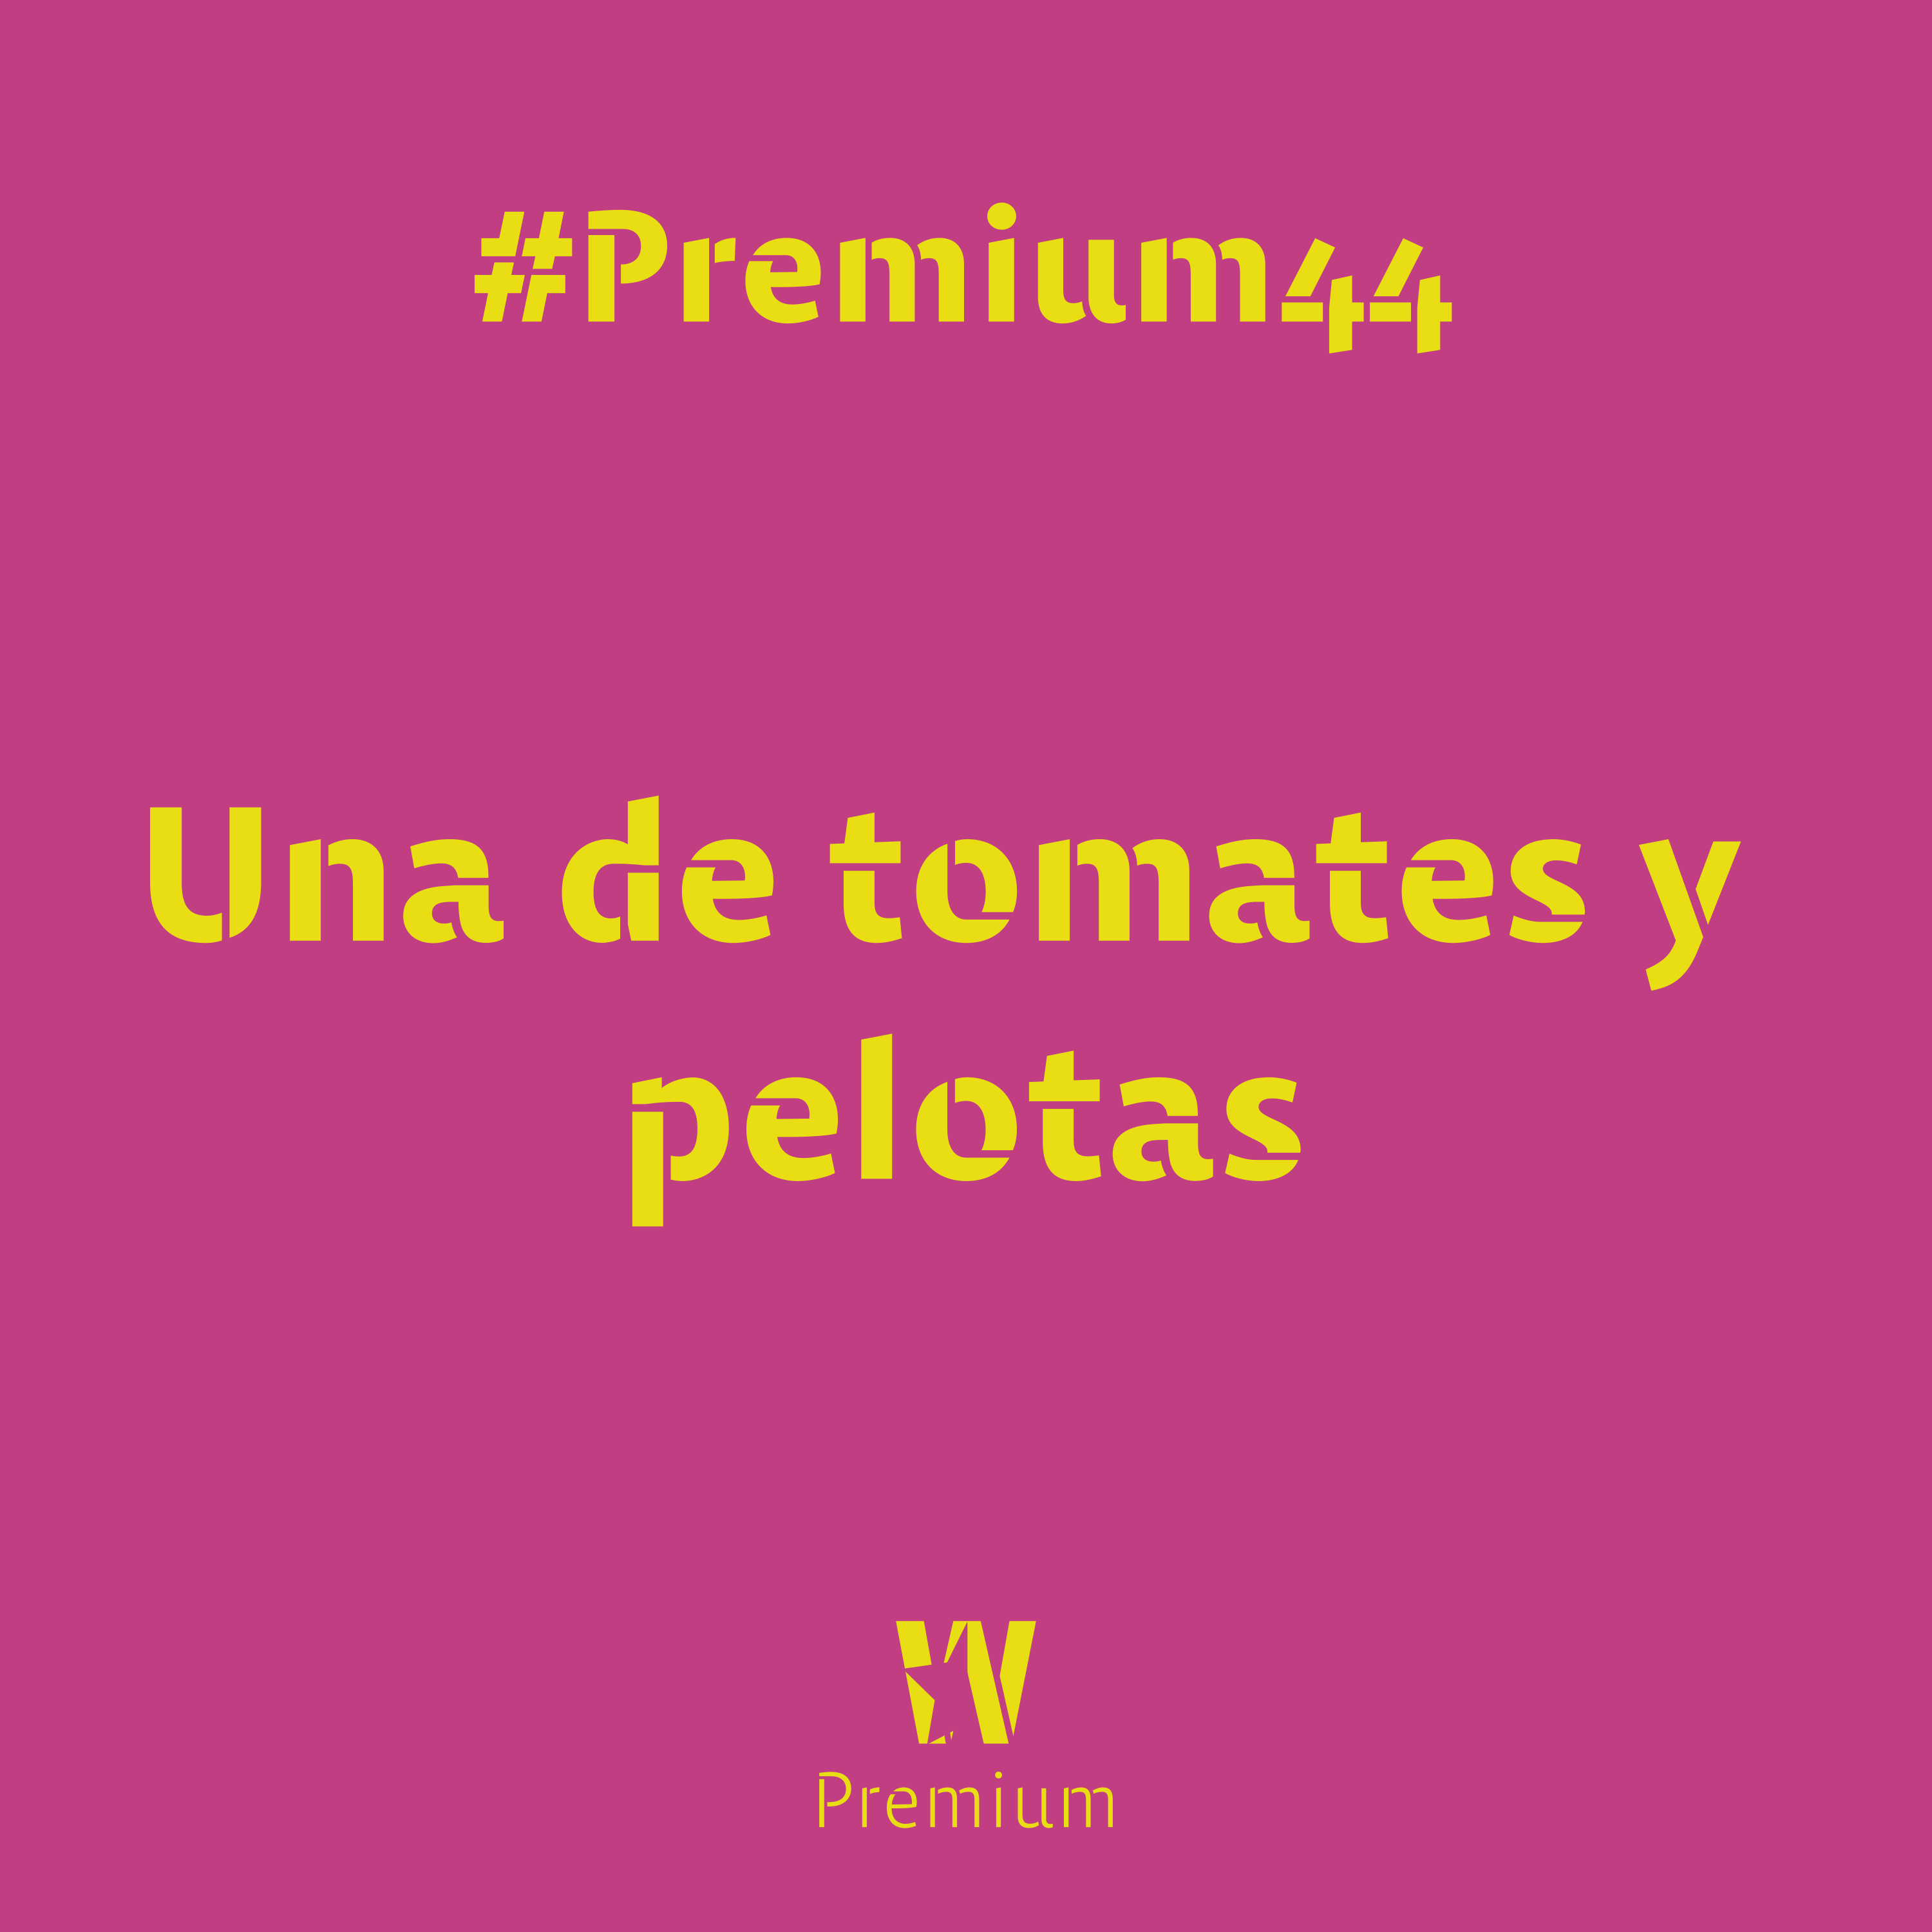 #Premium44 - Una de tomates y pelotas